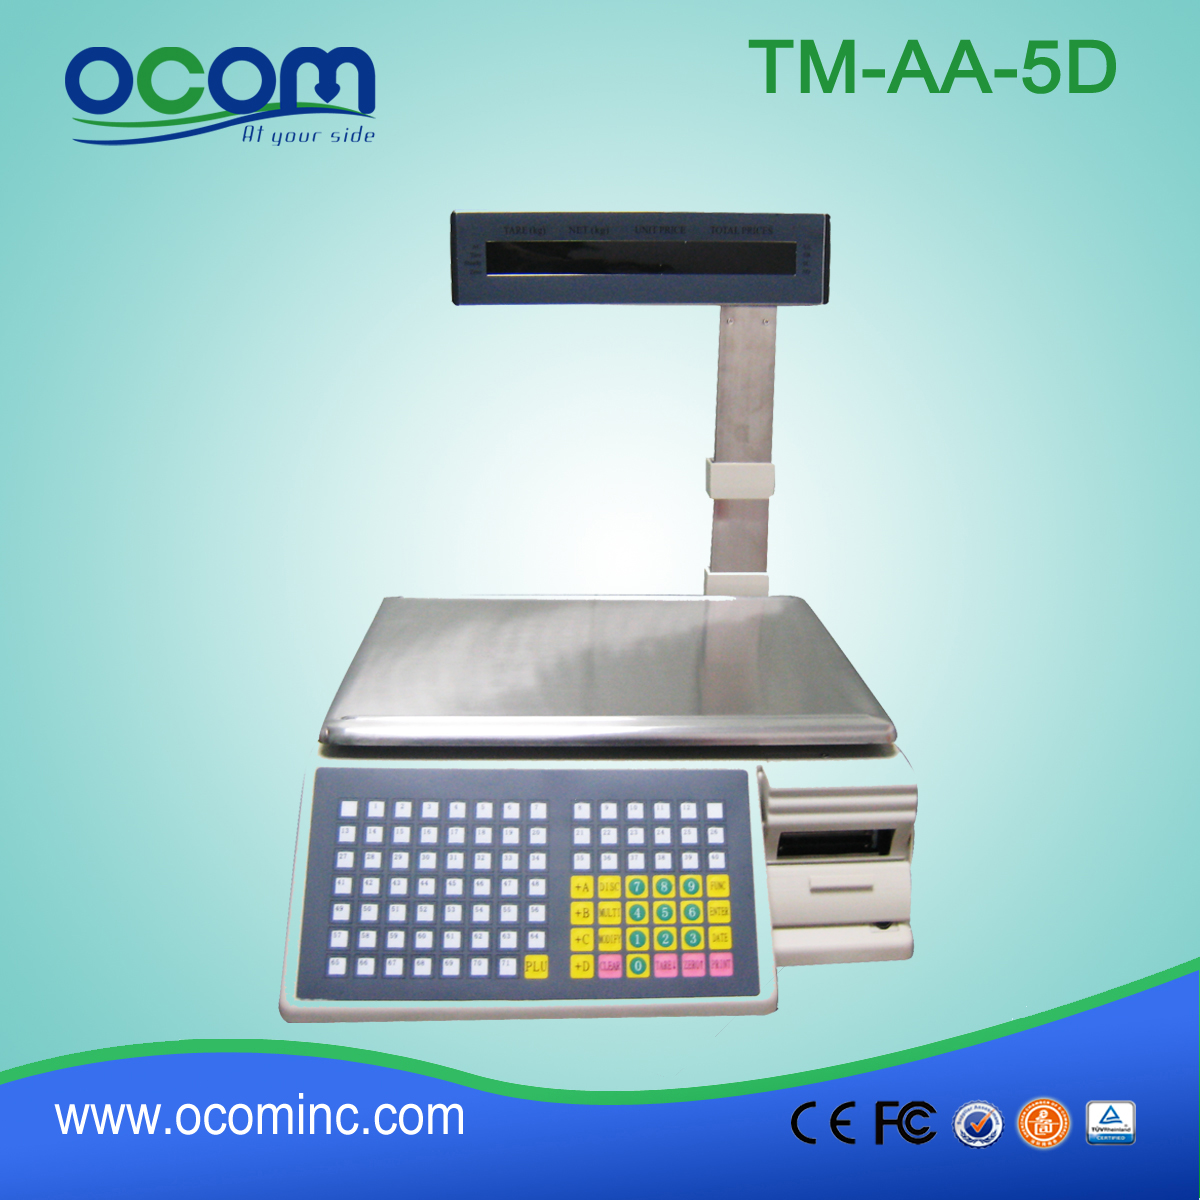 Skala drukowania kodów kreskowych TM-AA-5D